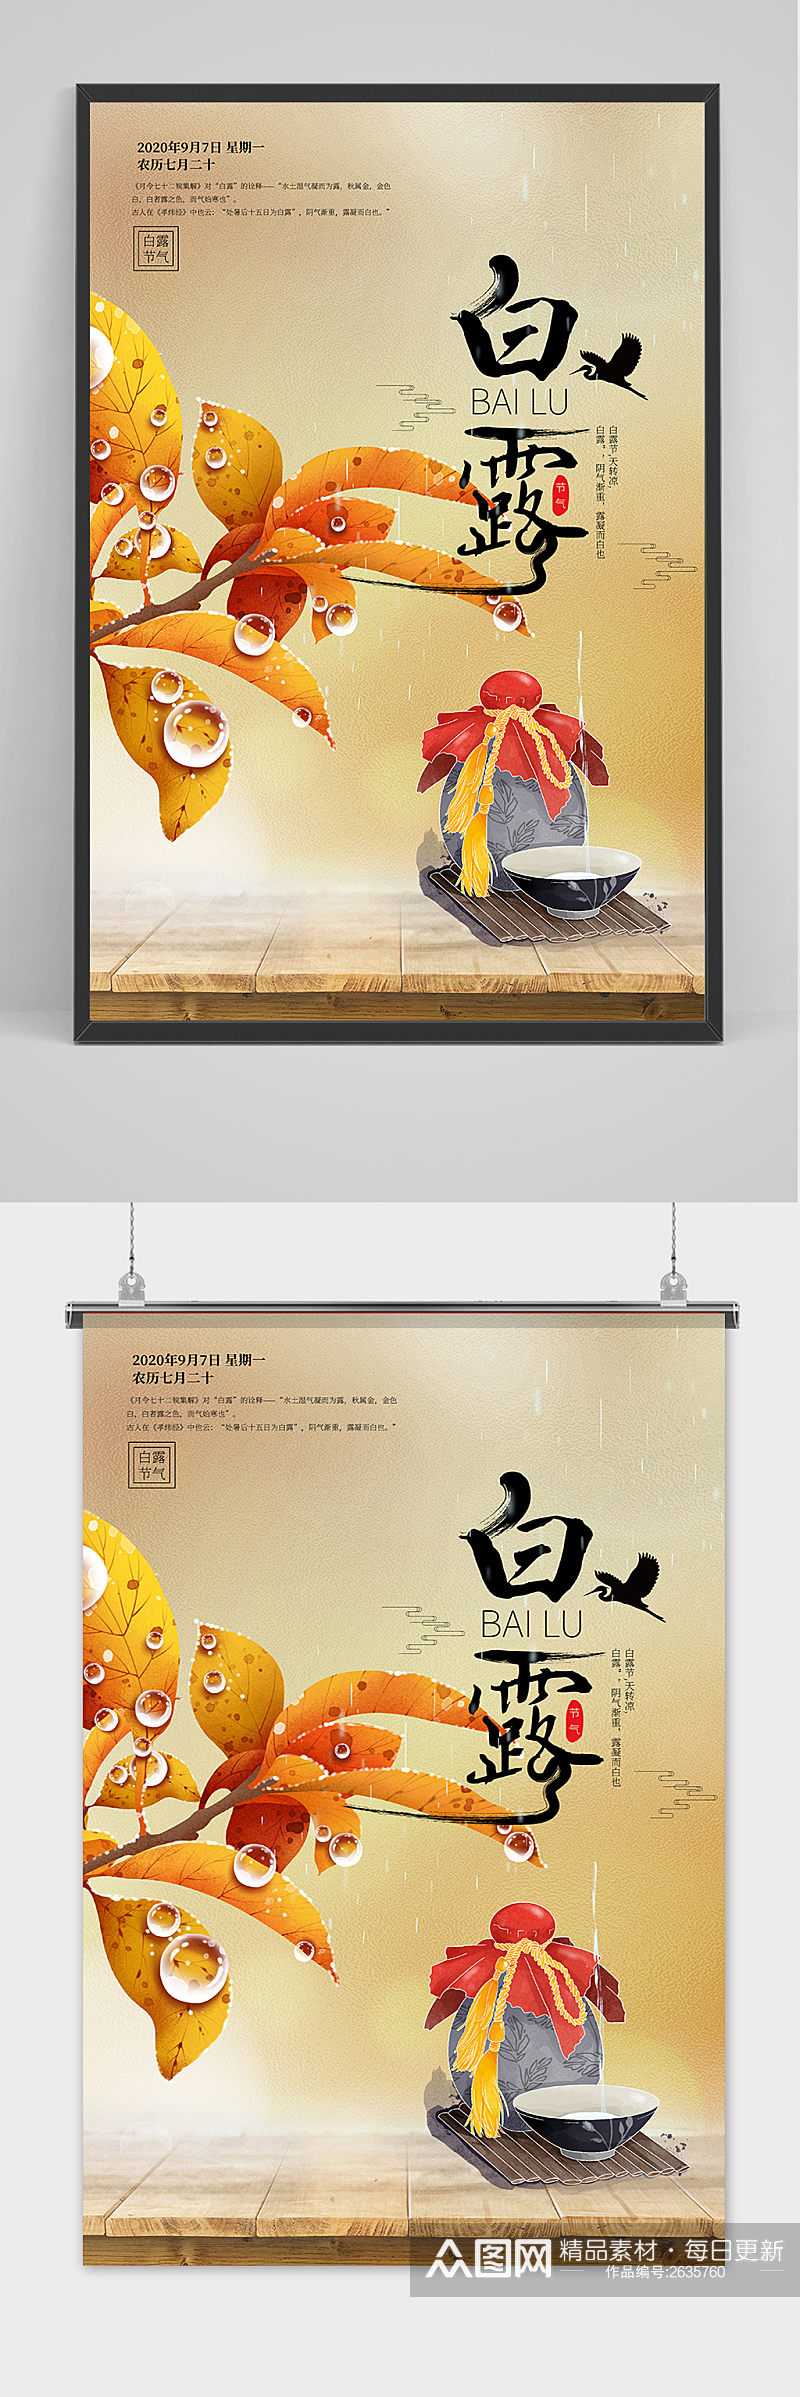 手绘古风中国传统24节气白露节海报素材